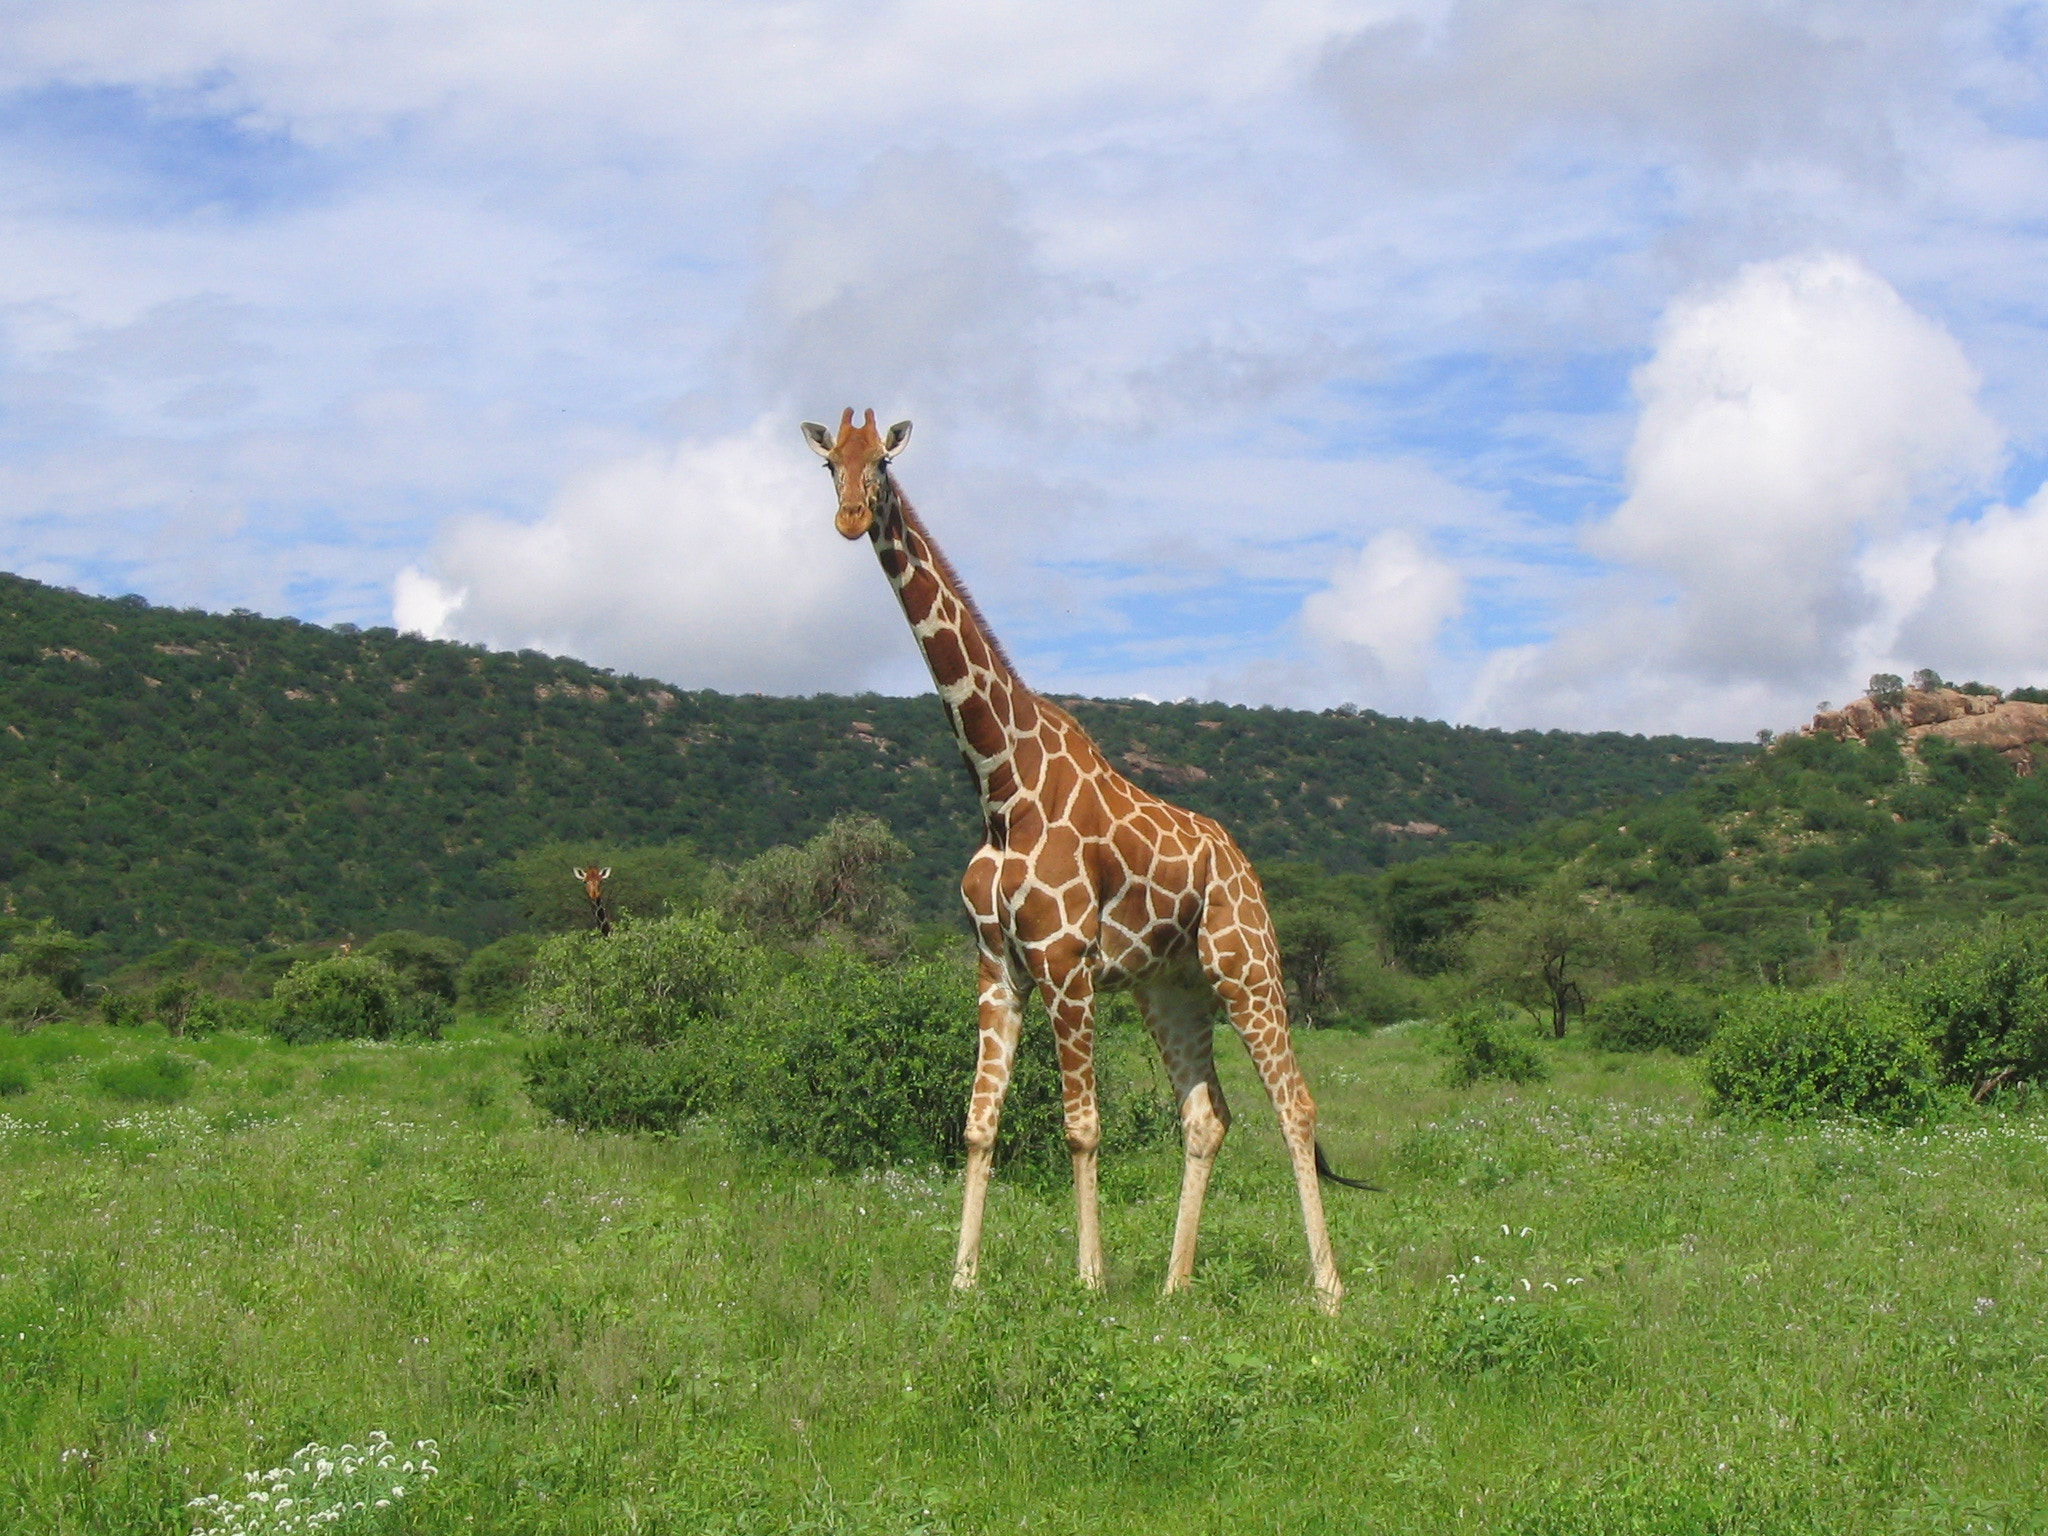 Canon POWERSHOT A70 sample photo. Samburu giraffe 1 photography